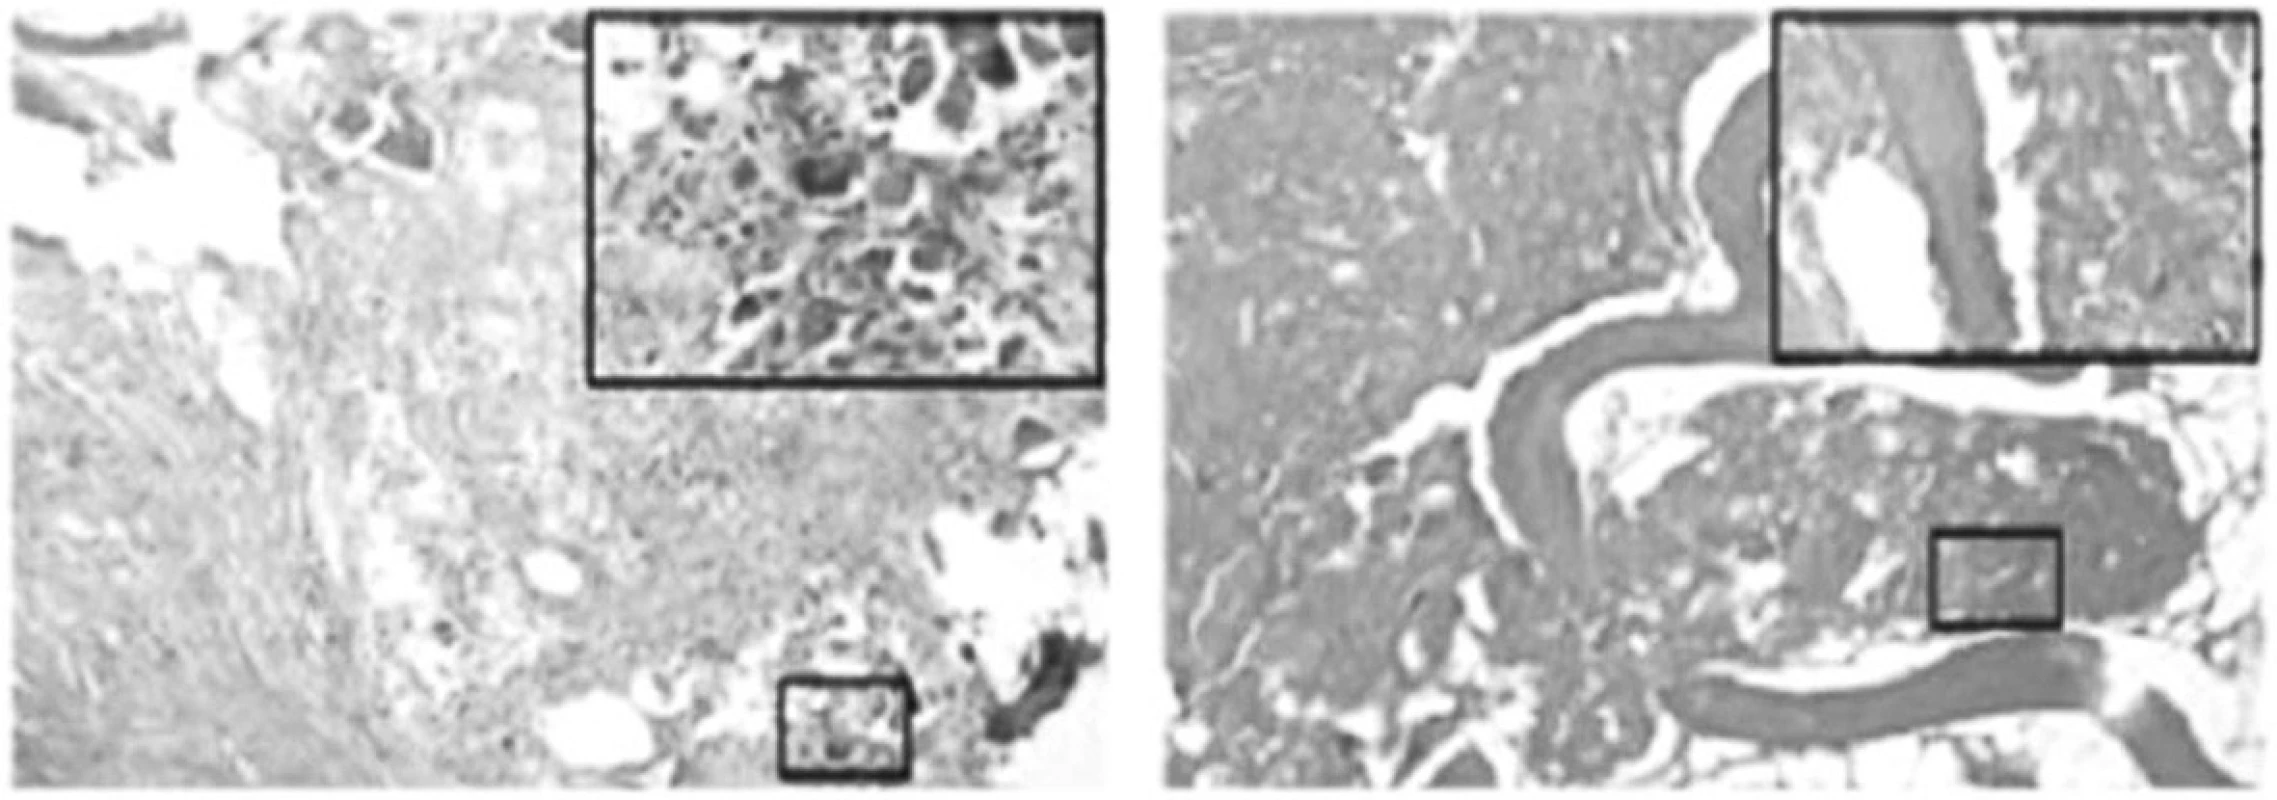 Výrazně vyšší zastoupení osteoblastů při barvení hematoxylin-eosin ve vzorku tkáně pacienta po aplikaci ESWT /obrázek vlevo/ oproti kontrolám /vpravo/.